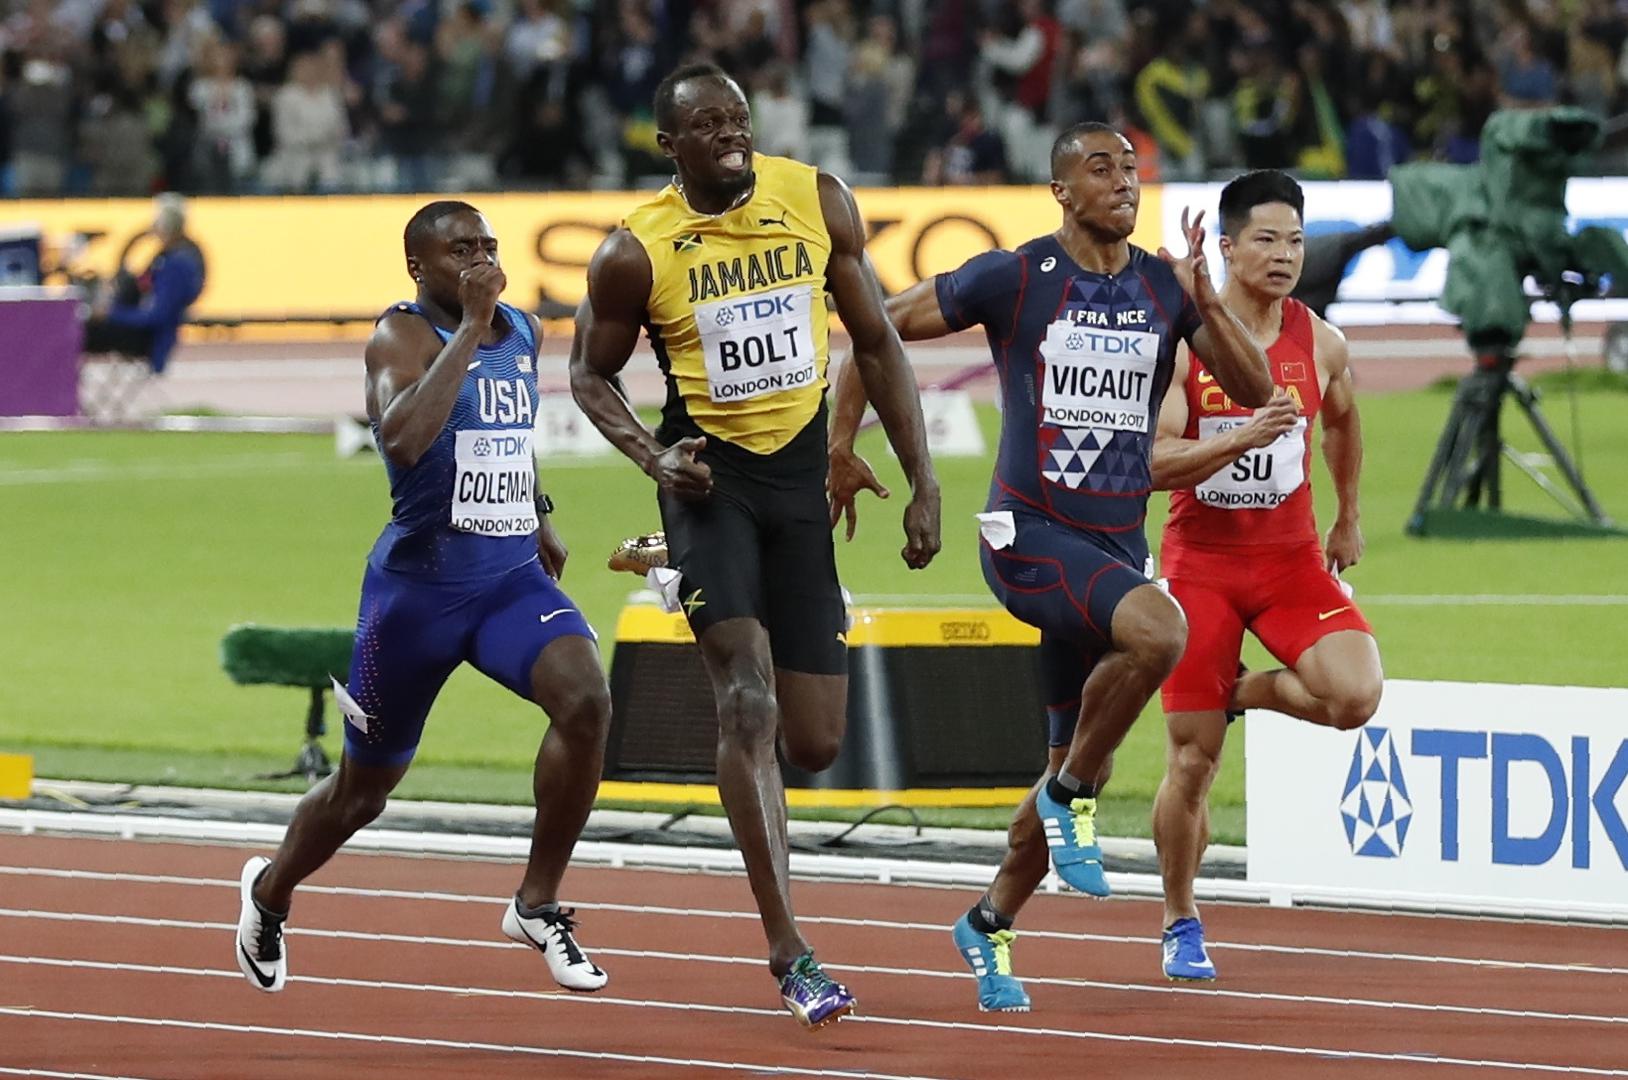 U svojoj posljednjoj utrci na 100 metara Usain Bolt je bio treći iza Justina Gatlina i Christiana Colemana